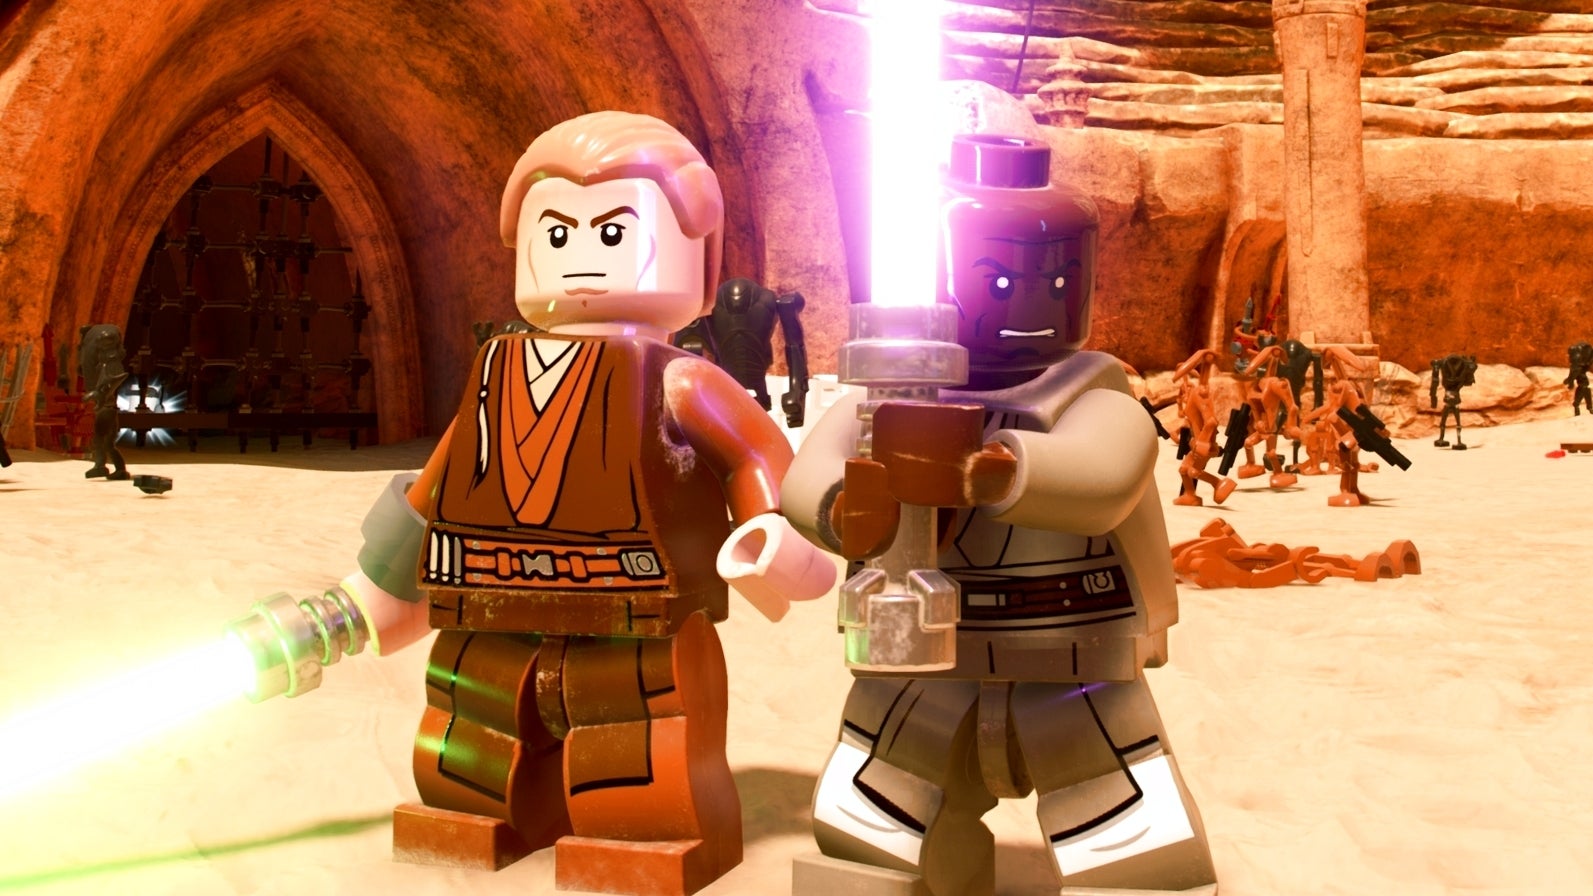 Bilder zu Lego Star Wars: Die Skywalker Saga erneut verschoben